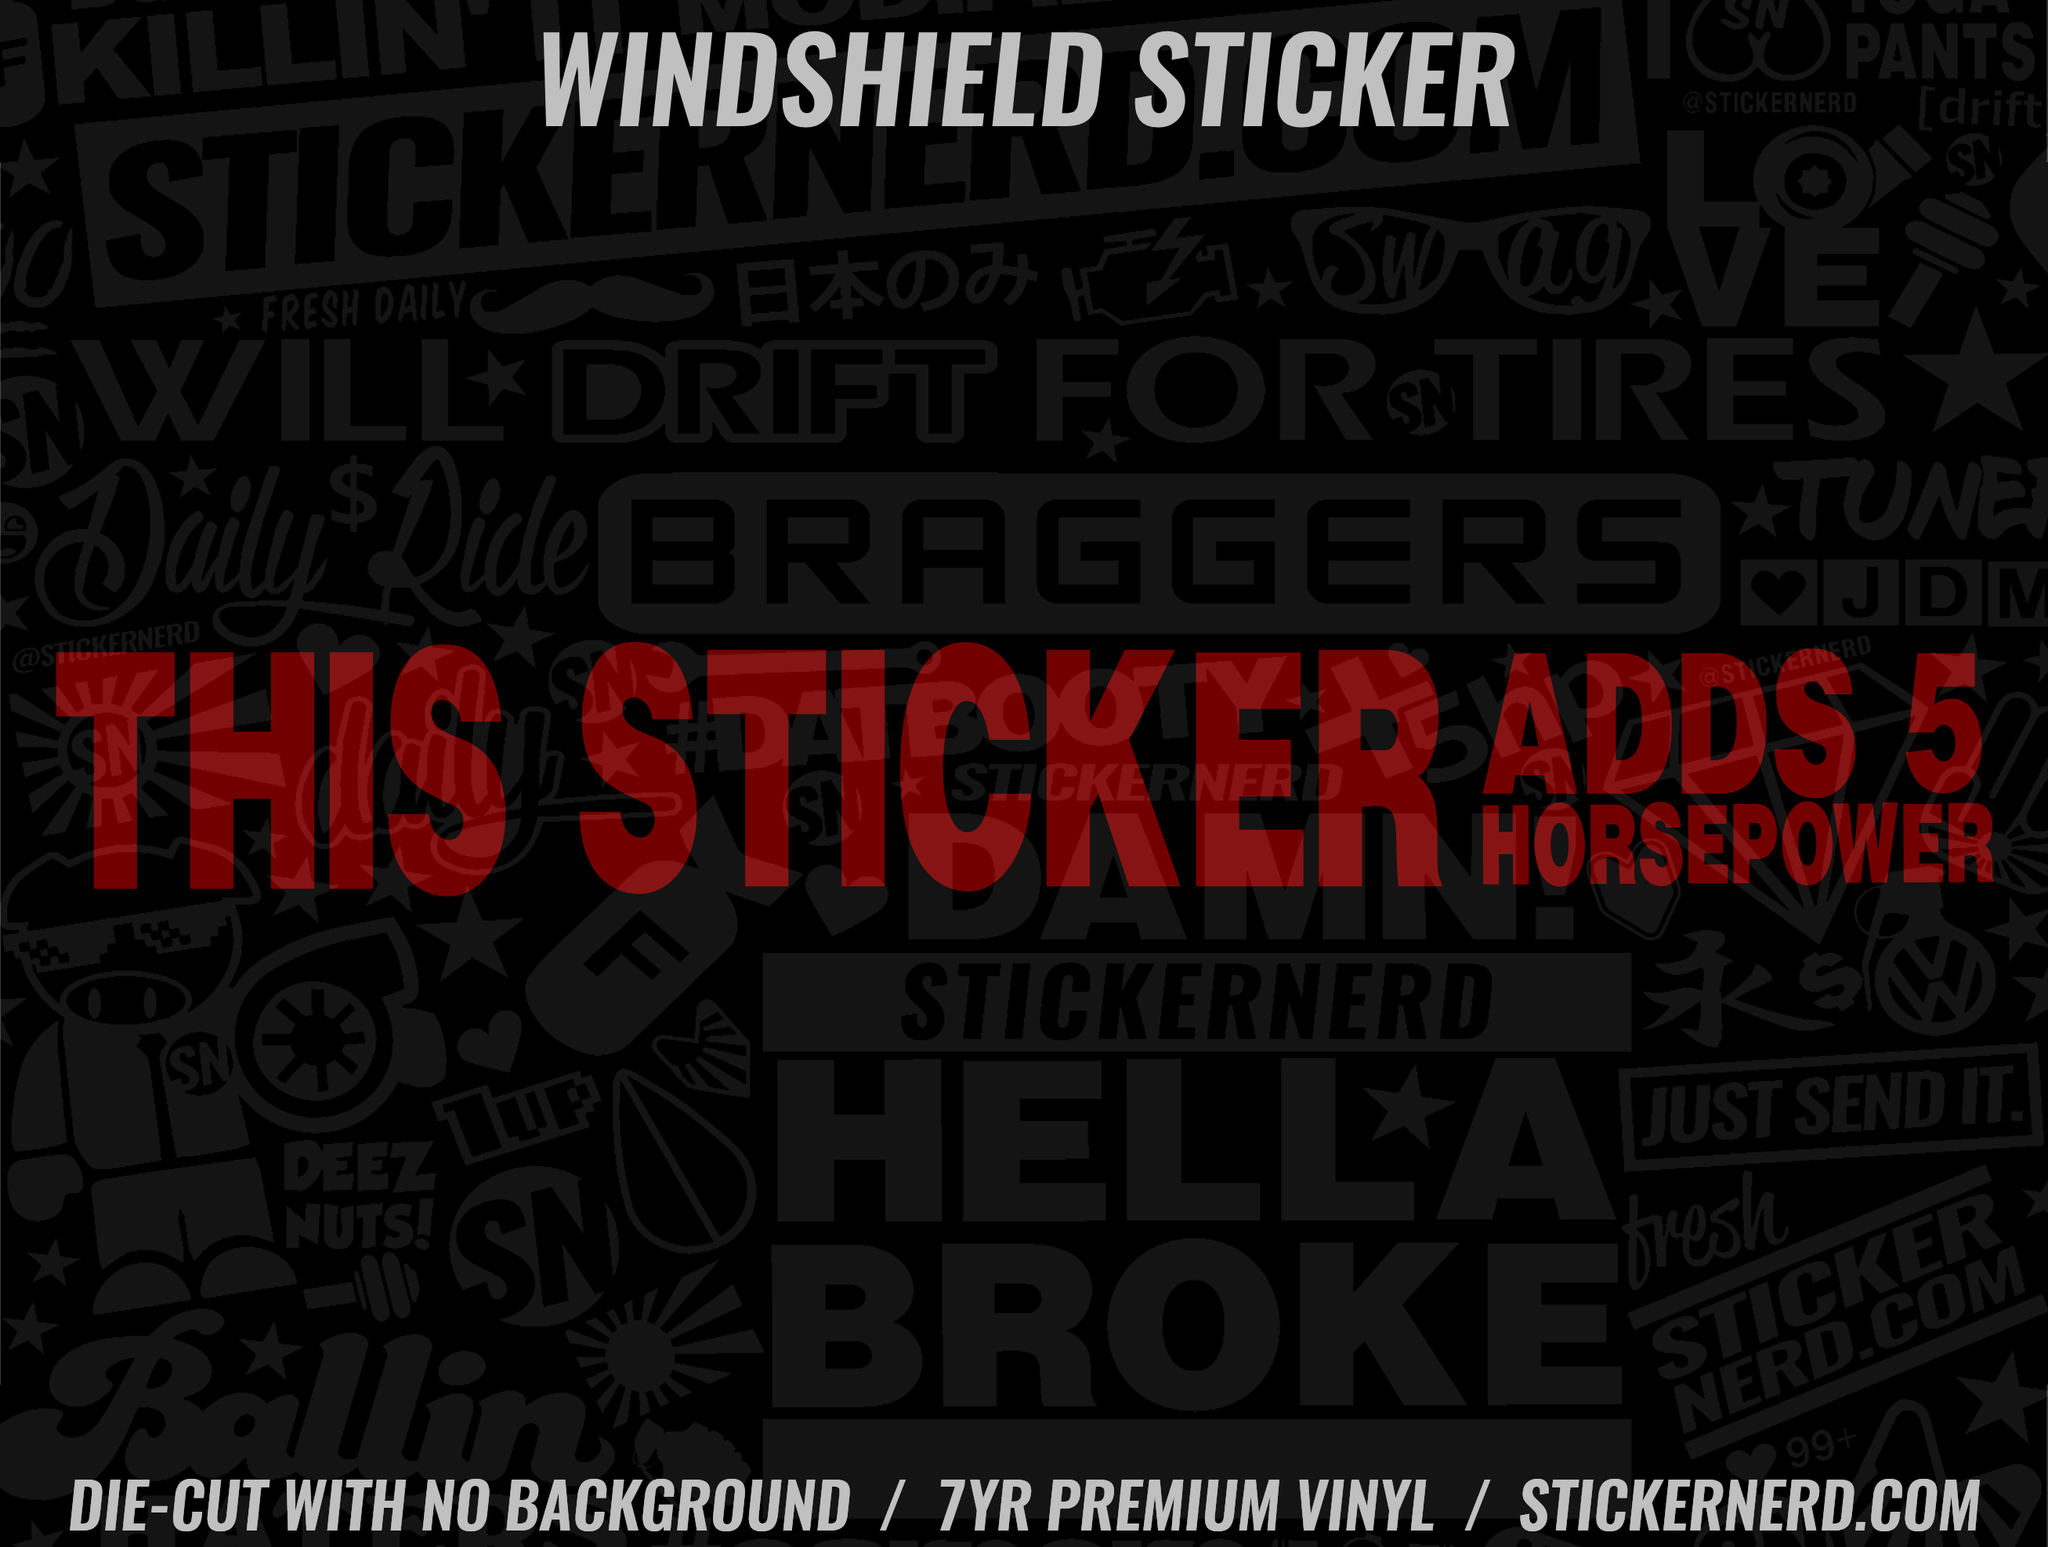 This Sticker Adds 5hp Windshield Sticker - Window Decal - STICKERNERD.COM